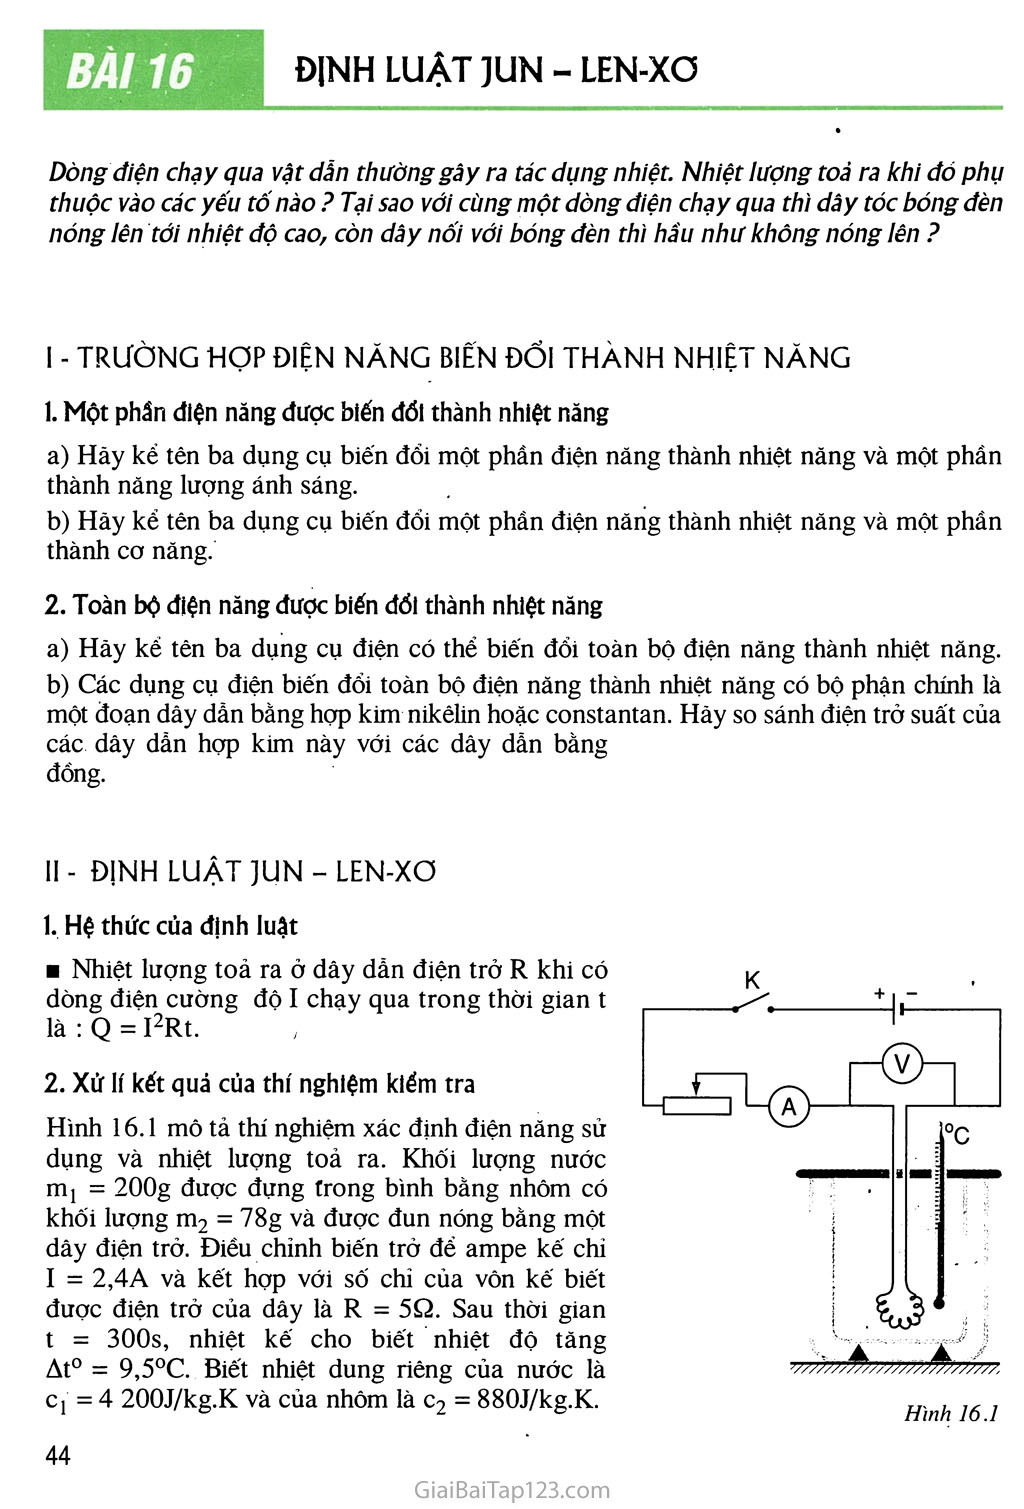 Bài 16 Định luật Jun - Len-xơ trang 1